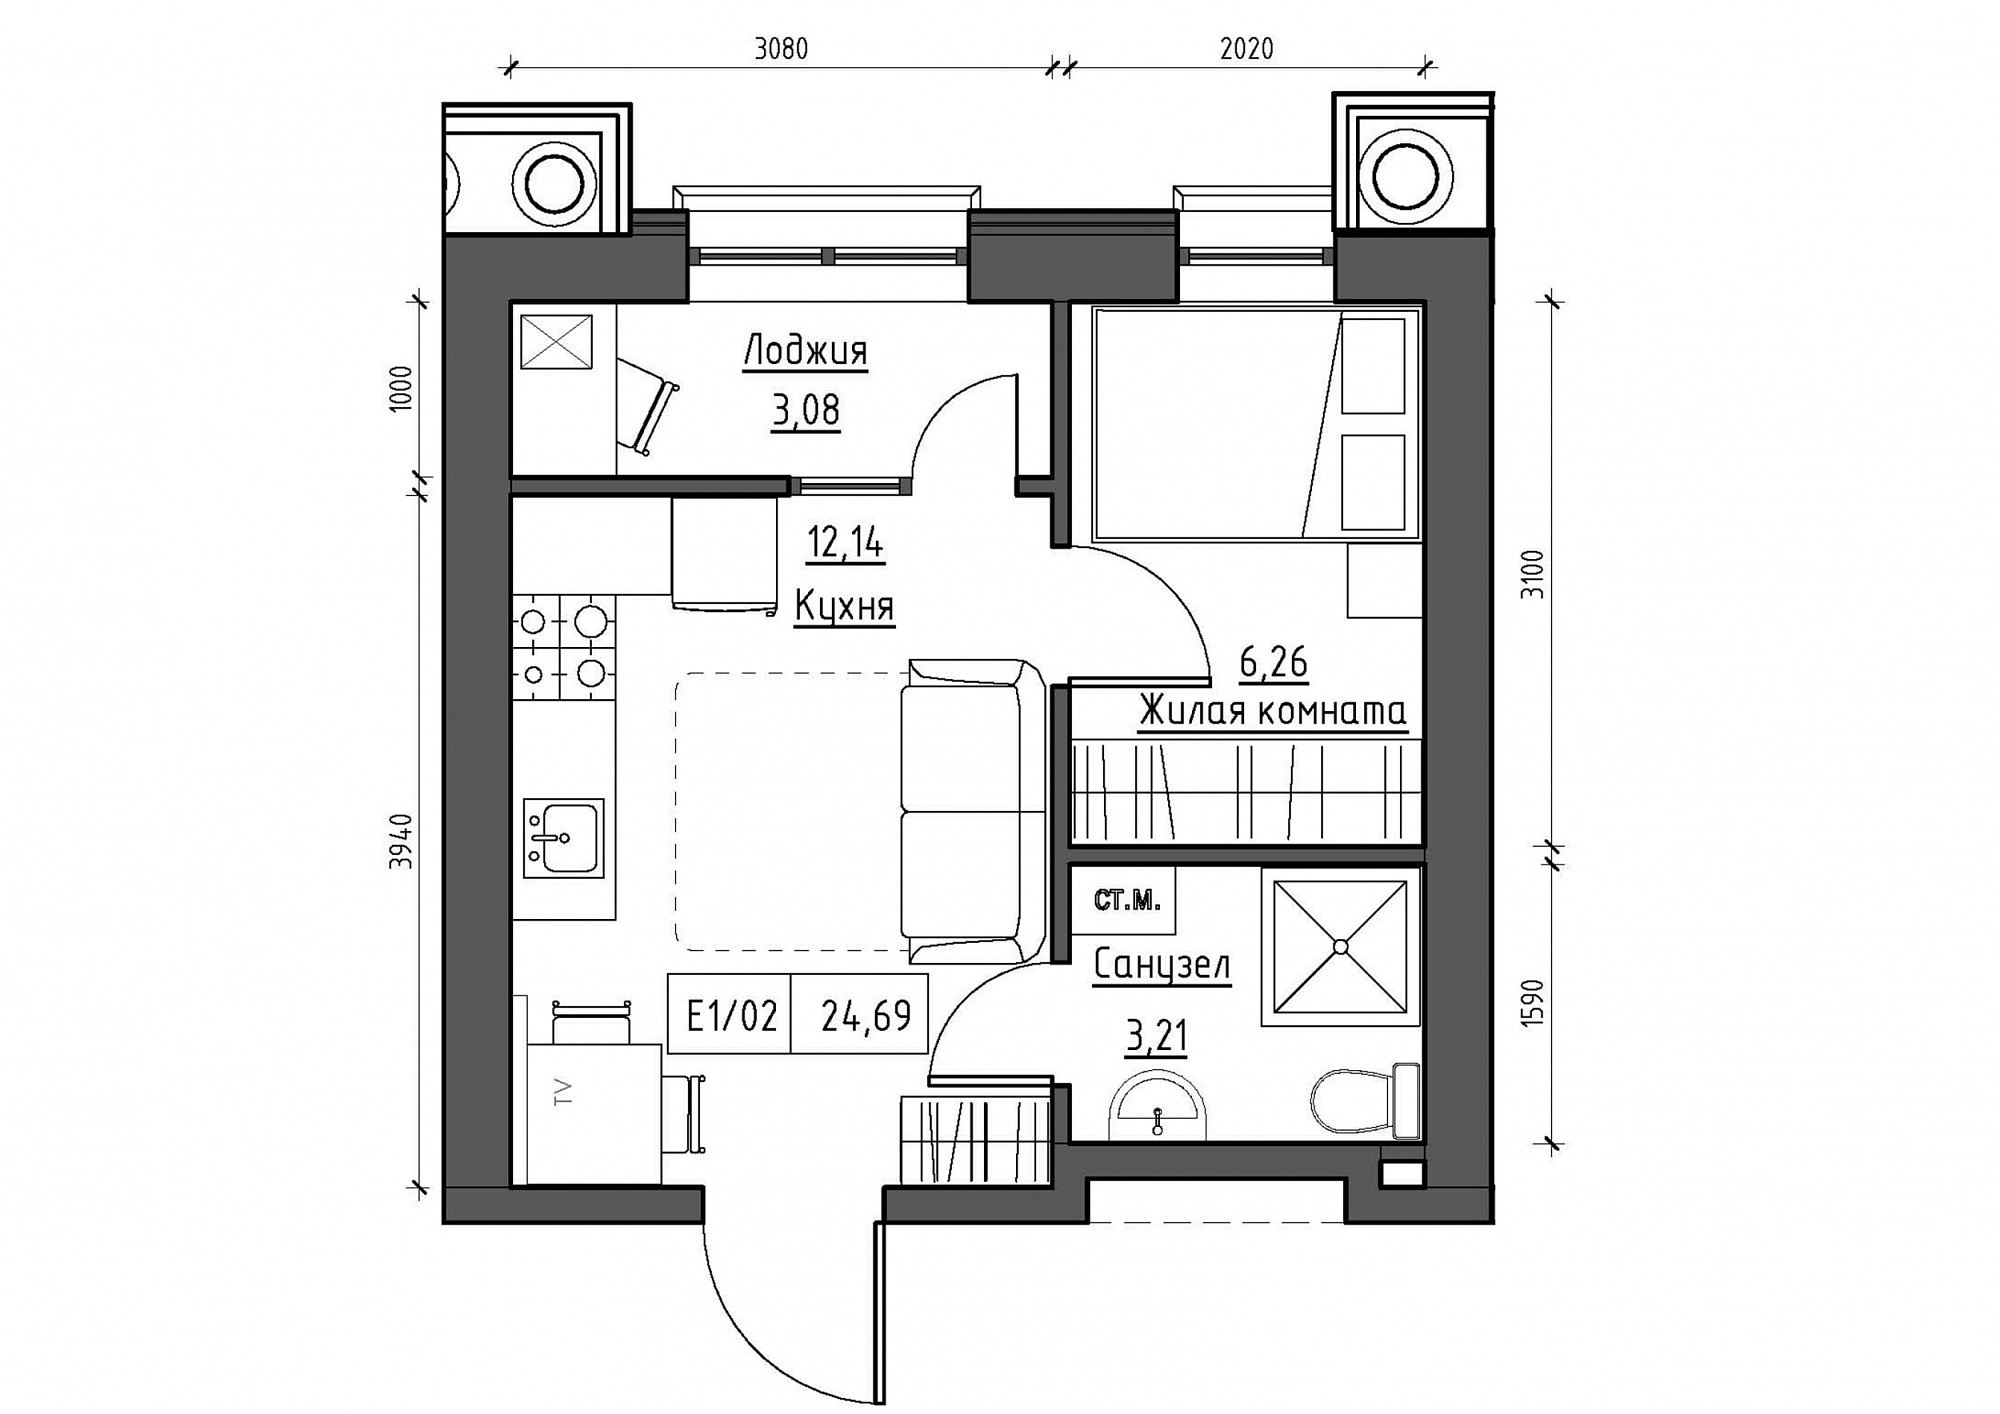 Планировка 1-к квартира площей 25.11м2, KS-012-04/0002.